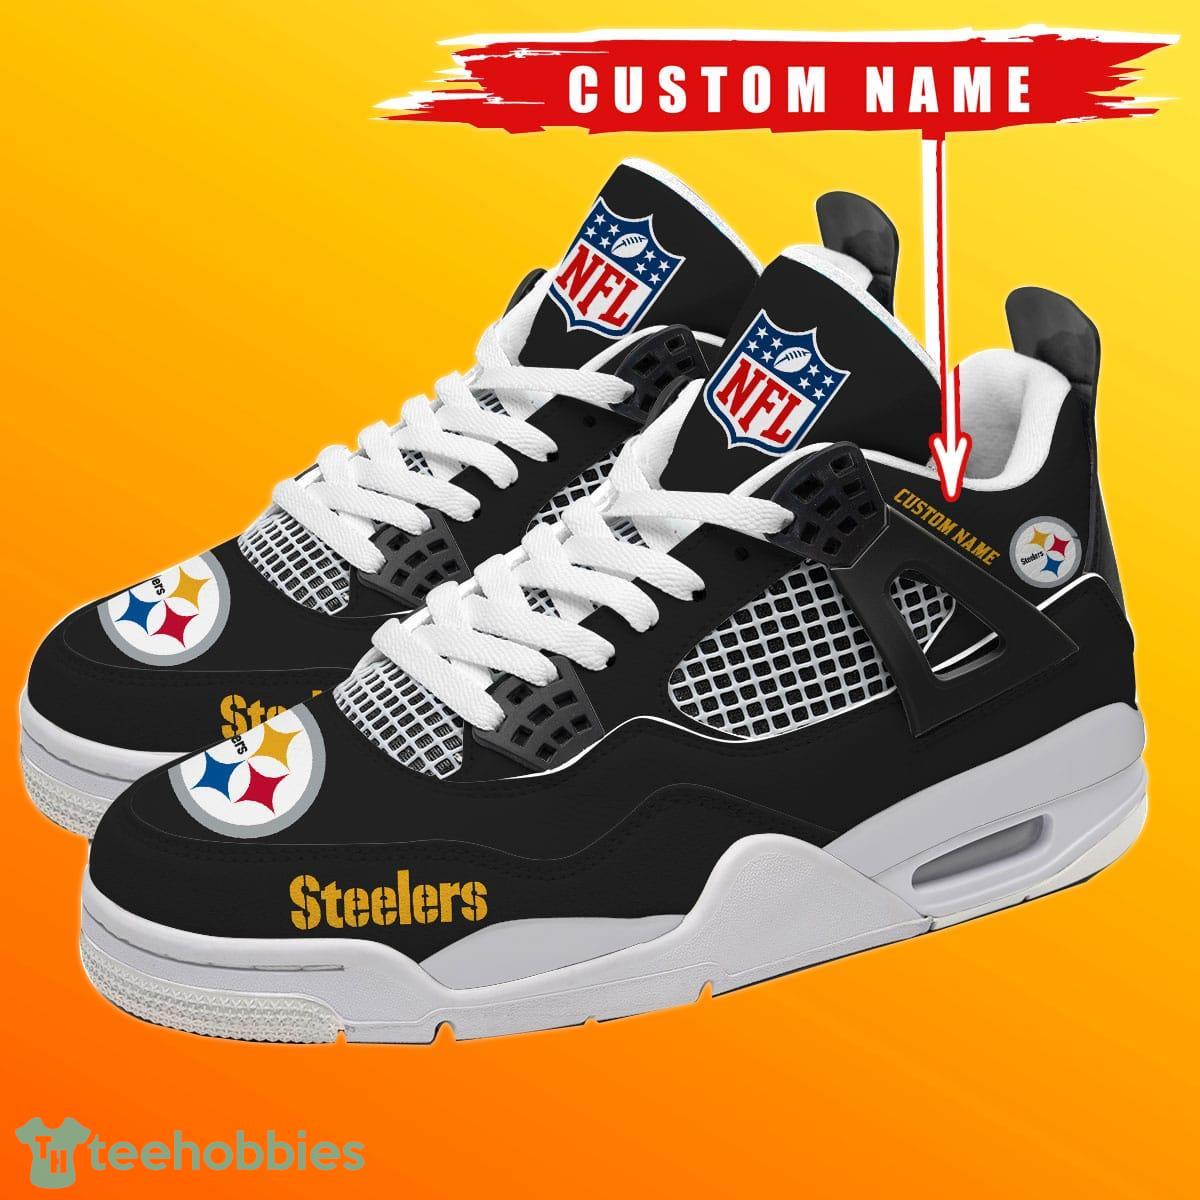 100% New] Custom Name PITTSBURGH STEELERS Sneakers